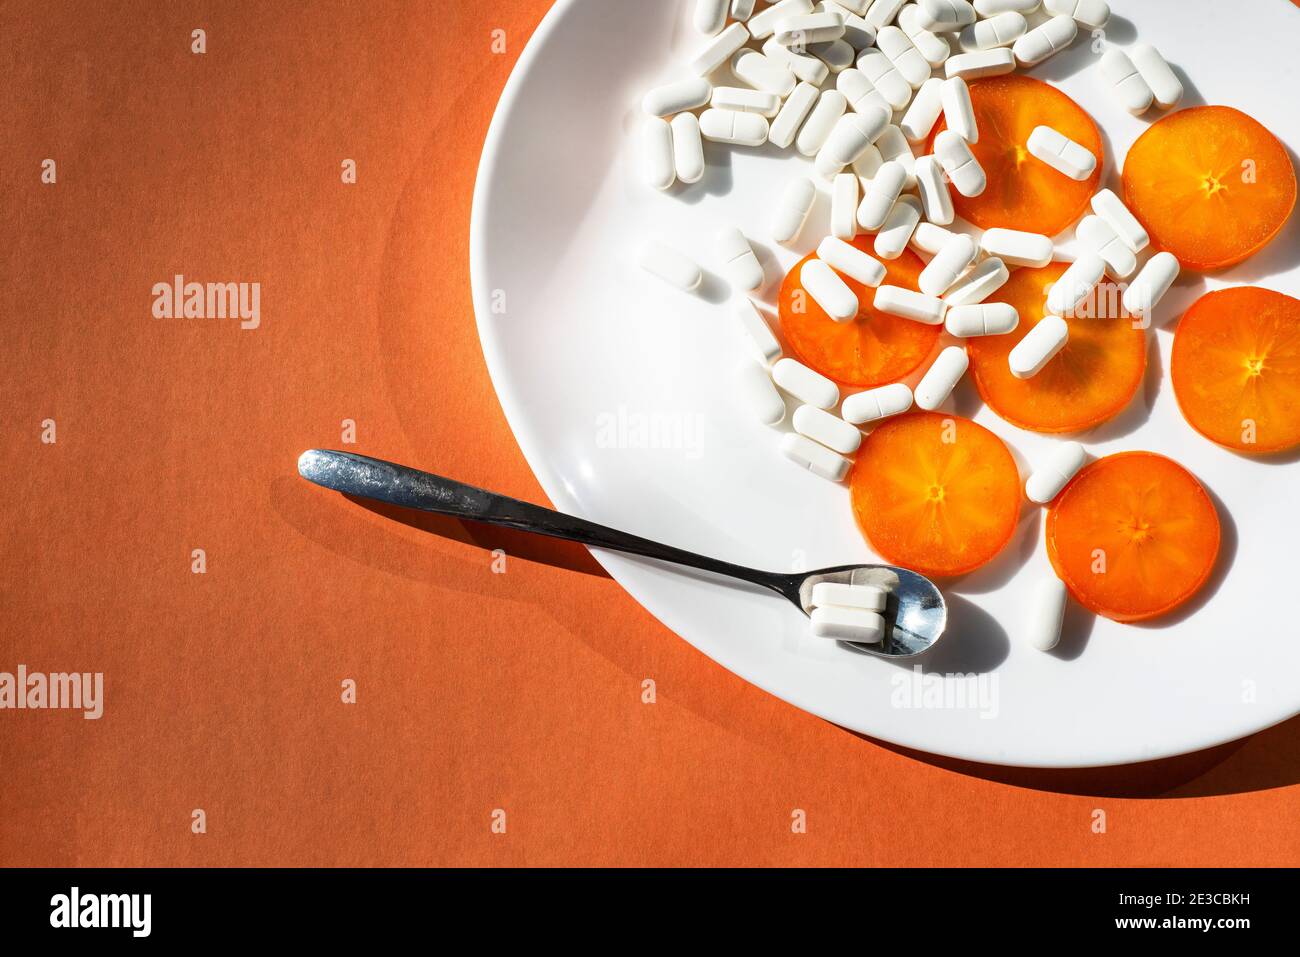 Auf einem ovalen weißen Teller - Kaki Orangenscheiben, Kapseln von Mineralergänzungen und einem Löffel mit einer Pille. Orange. Biohacking zu Gesundheitsthemen. Stockfoto